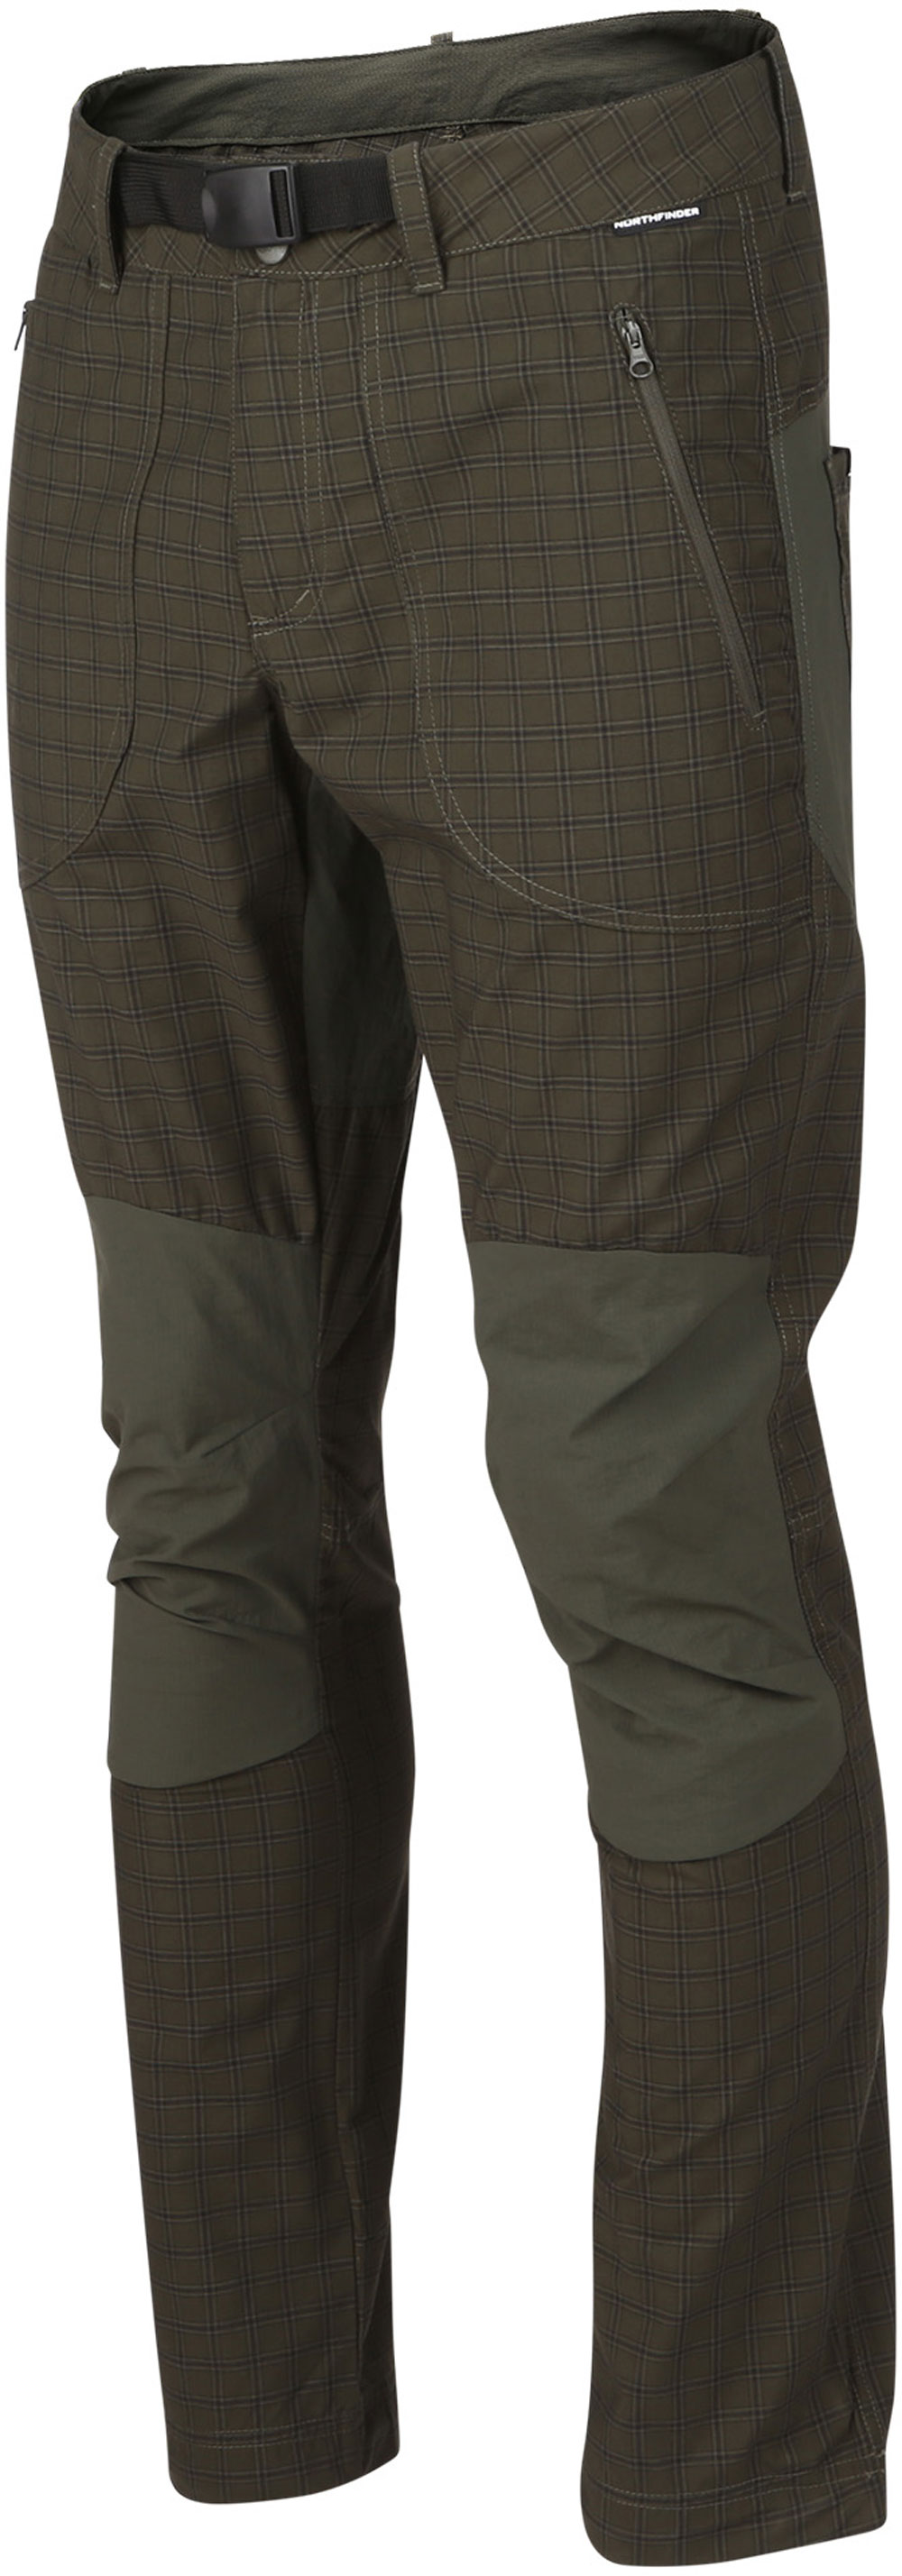 Men’s outdoor trousers